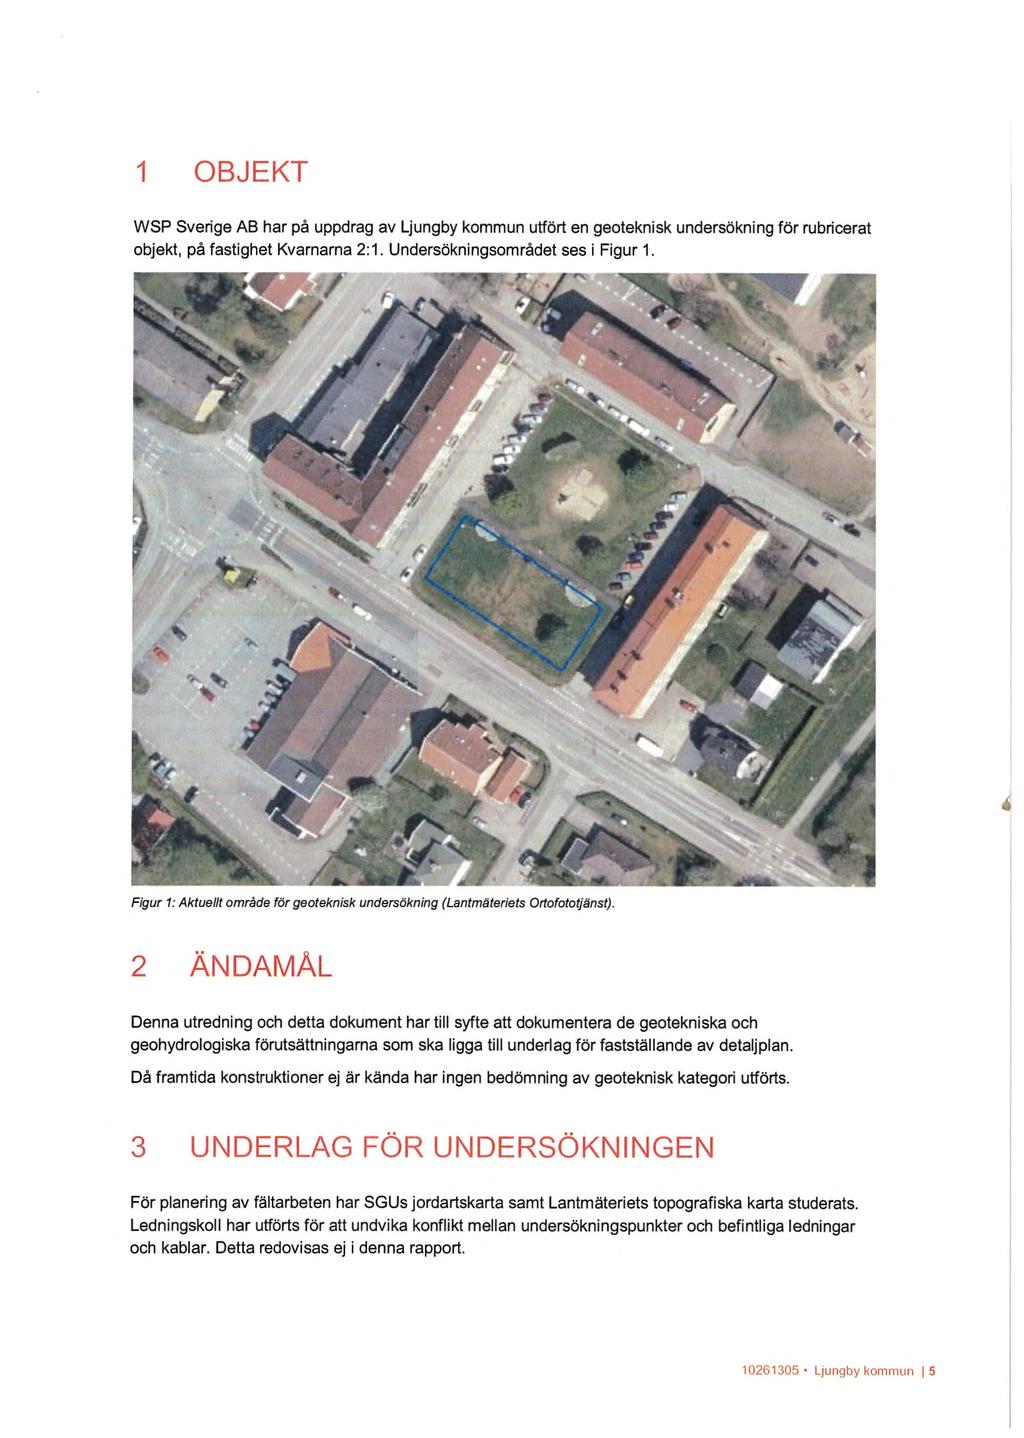 1 OBJEKT WSP Sverige AB har på uppdrag av Ljungby kommun utfört en geoteknisk undersökning för rubricerat objekt, på fastighet Kvarnarna 2:1. Undersökningsområdet ses i Figur 1.